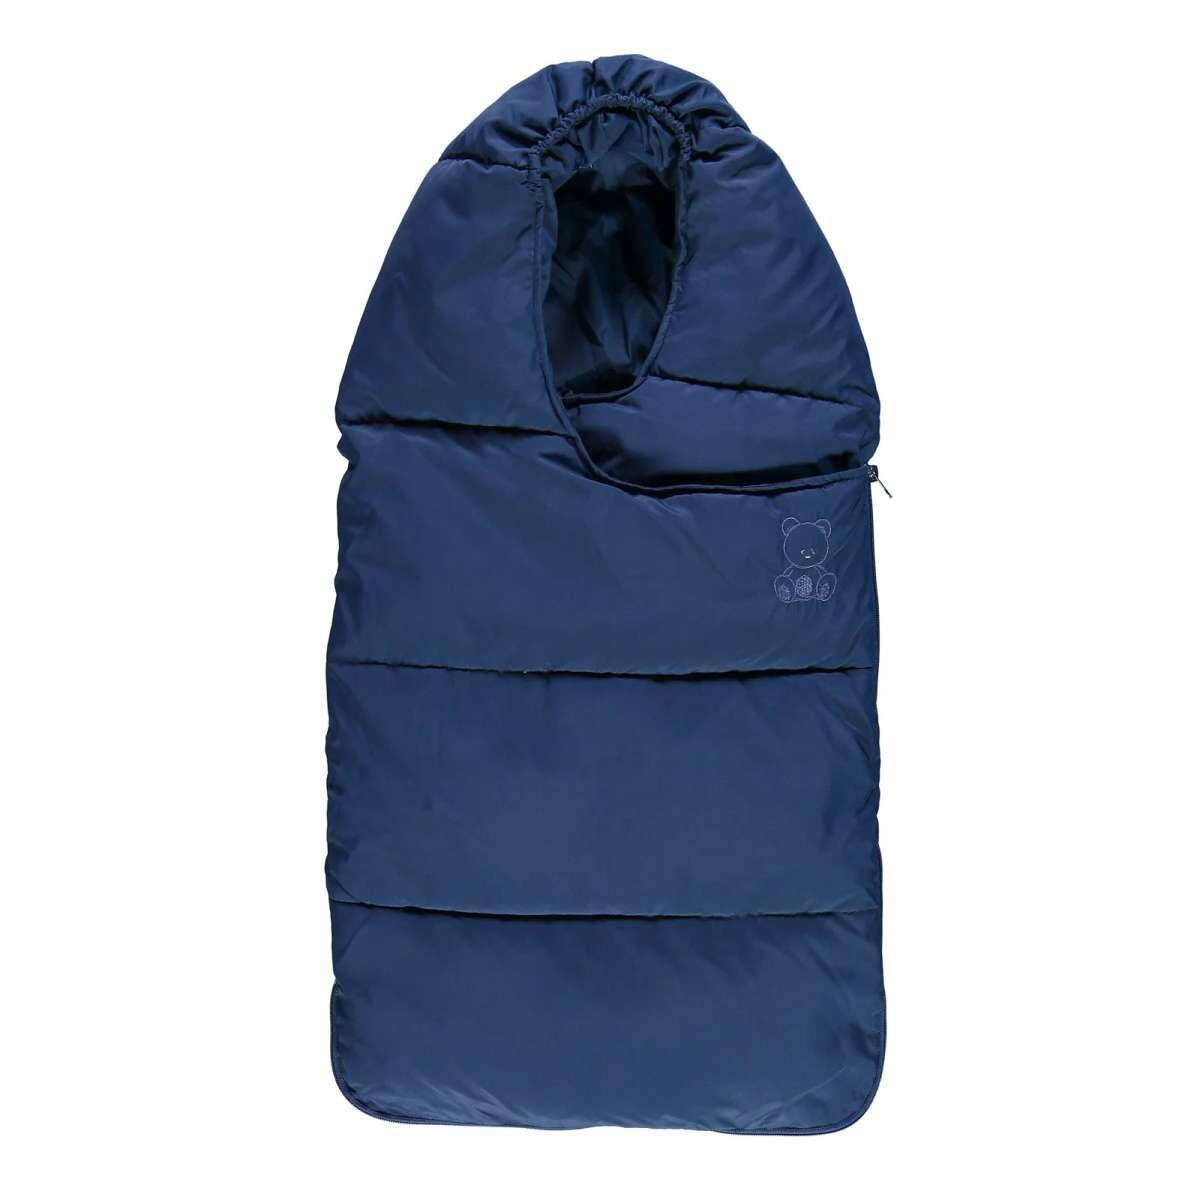 Thermal sleeping bag for stroller or pram by Ellepi BM5567